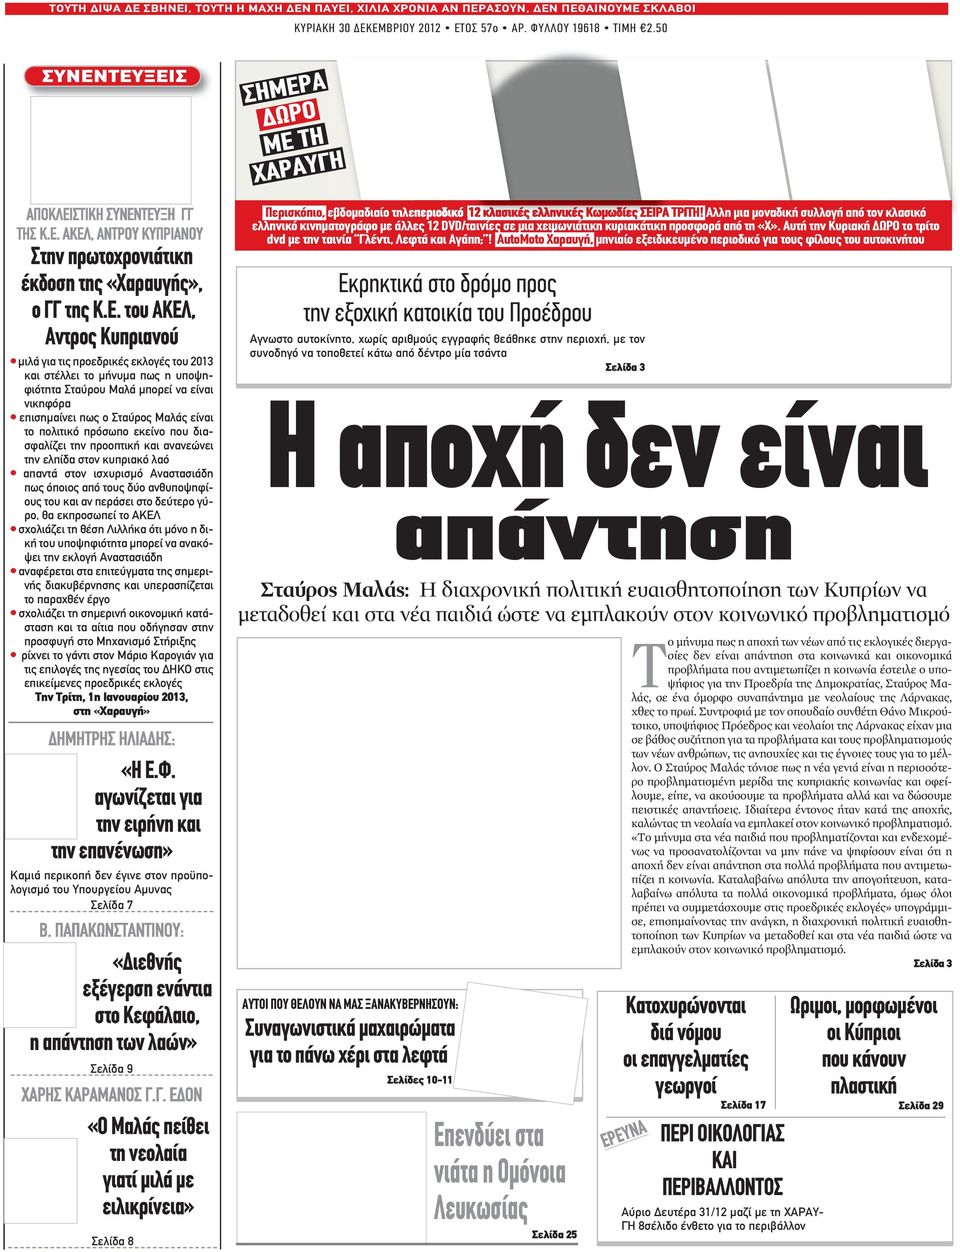 ΤΕΥΞΕΙΣ ΣΗΜΕΡΑ ΔΩΡΟ ΜE TH XΑΡΑΥΓΗ Στην πρωτοχρονιάτικη έκδοση της «Χαραυγής», ο ΓΓ της Κ.Ε. του ΑΚΕΛ, Αντρος Κυπριανού μιλά για τις προεδρικές εκλογές του 2013 και στέλλει το μήνυμα πως η